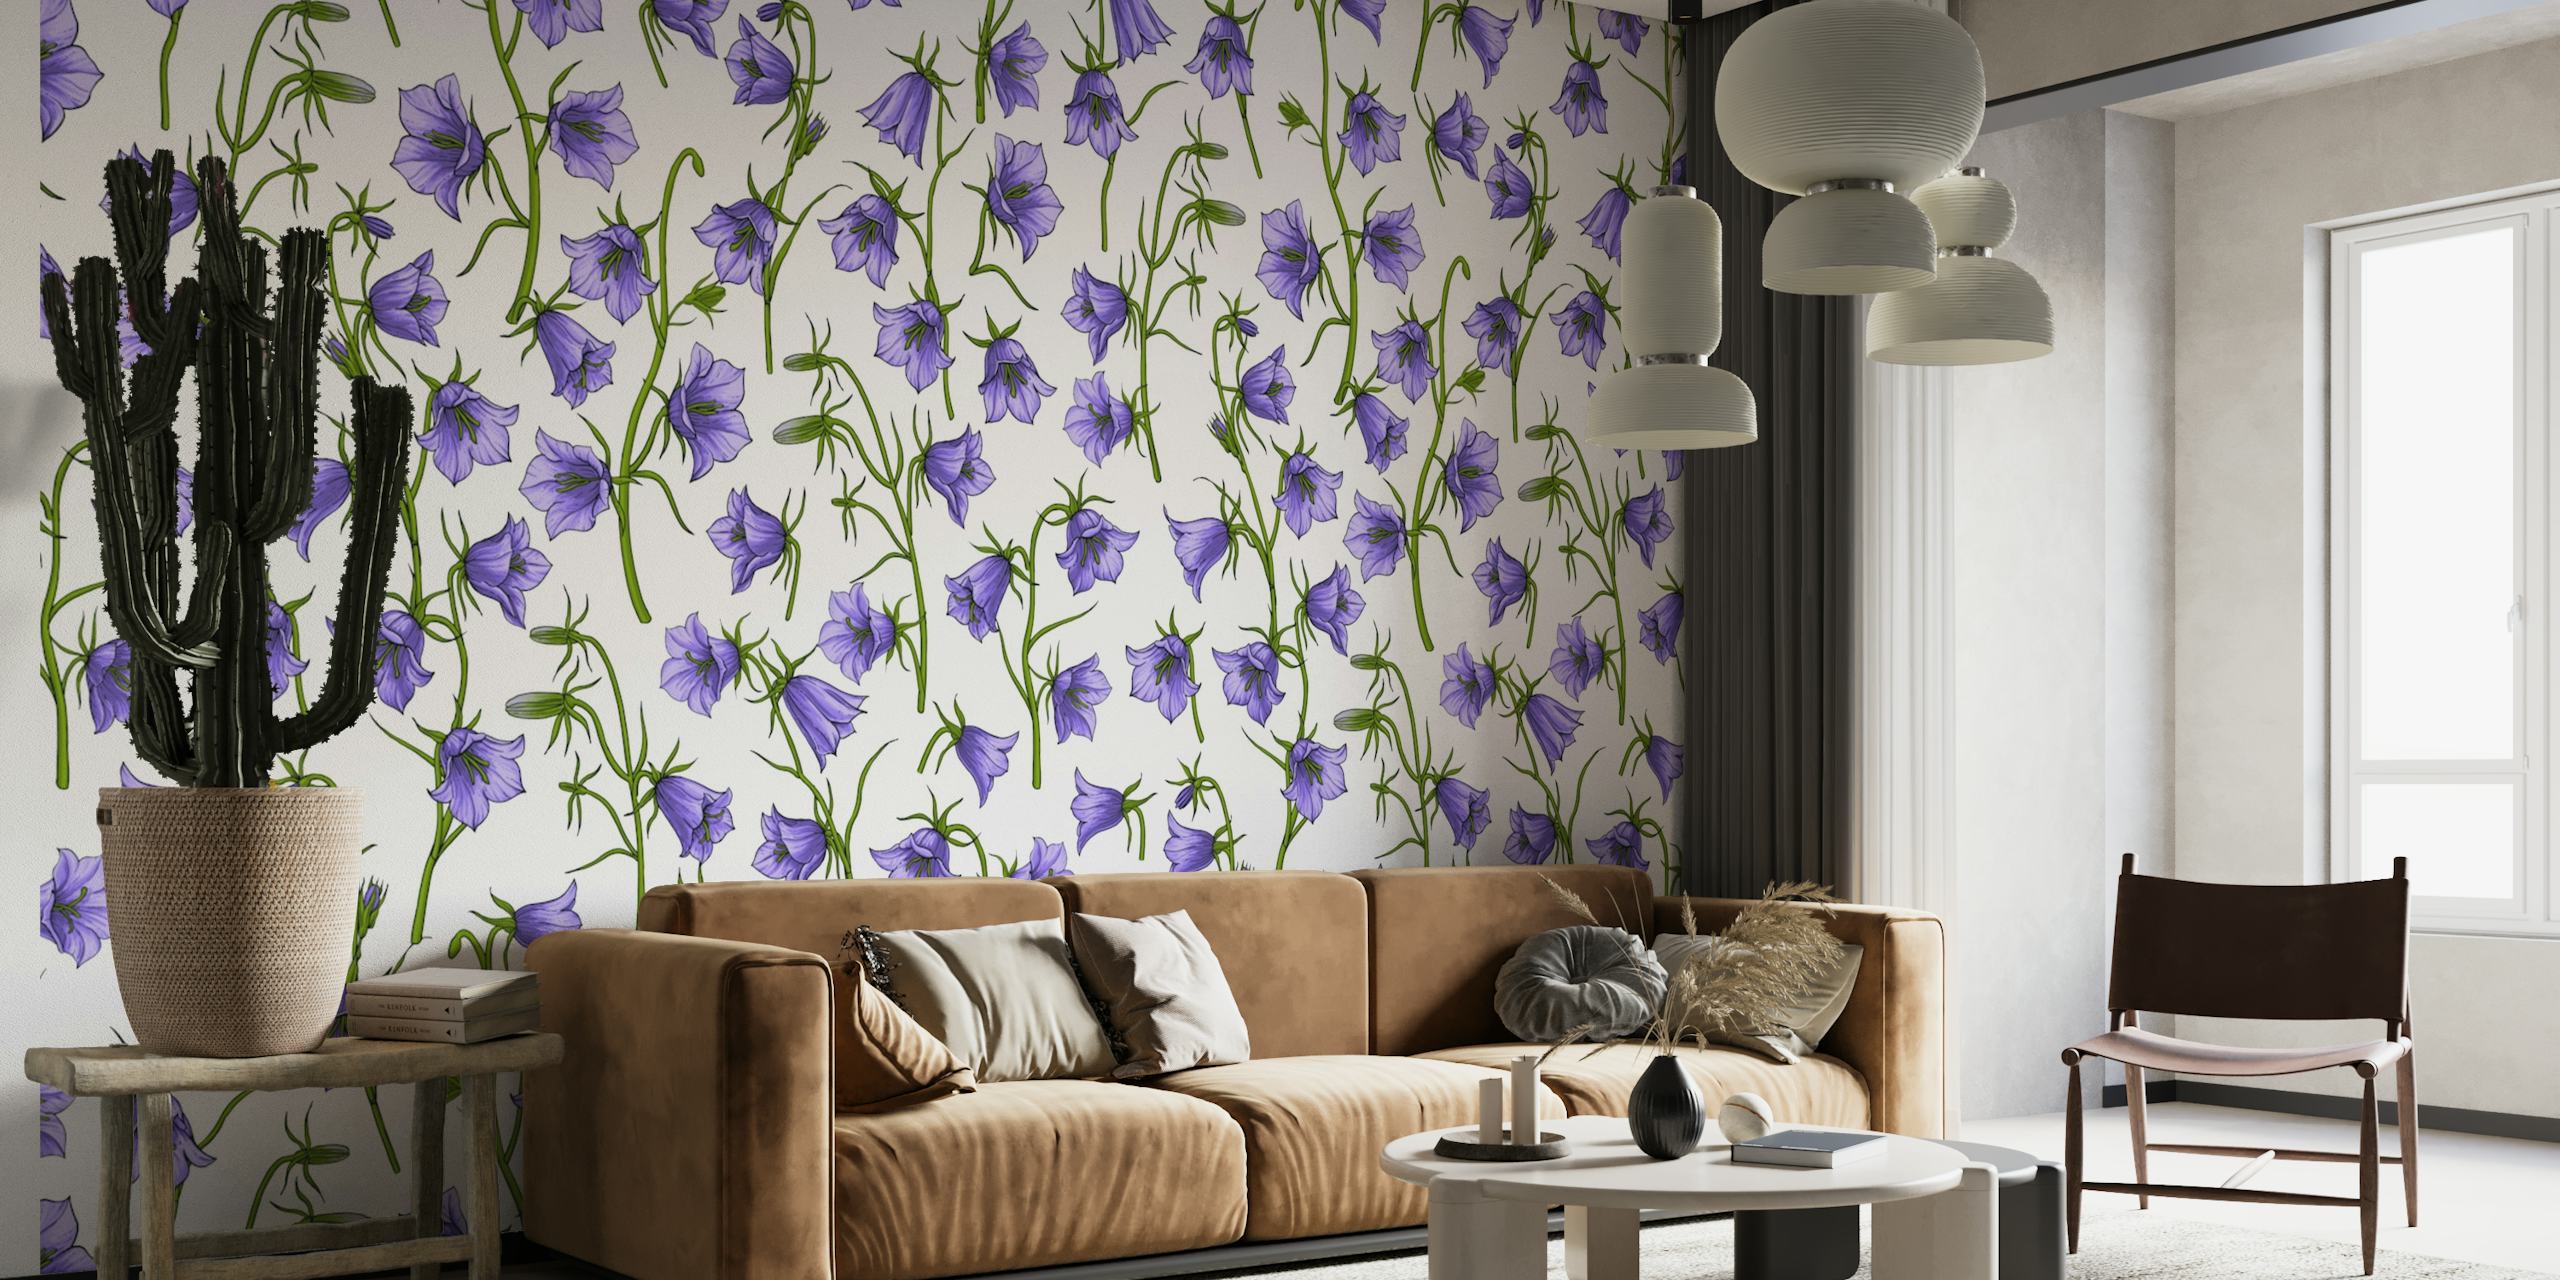 Bellflowers in Violet fotobehang met een herhalend patroon van violette klokvormige bloemen op een witte achtergrond